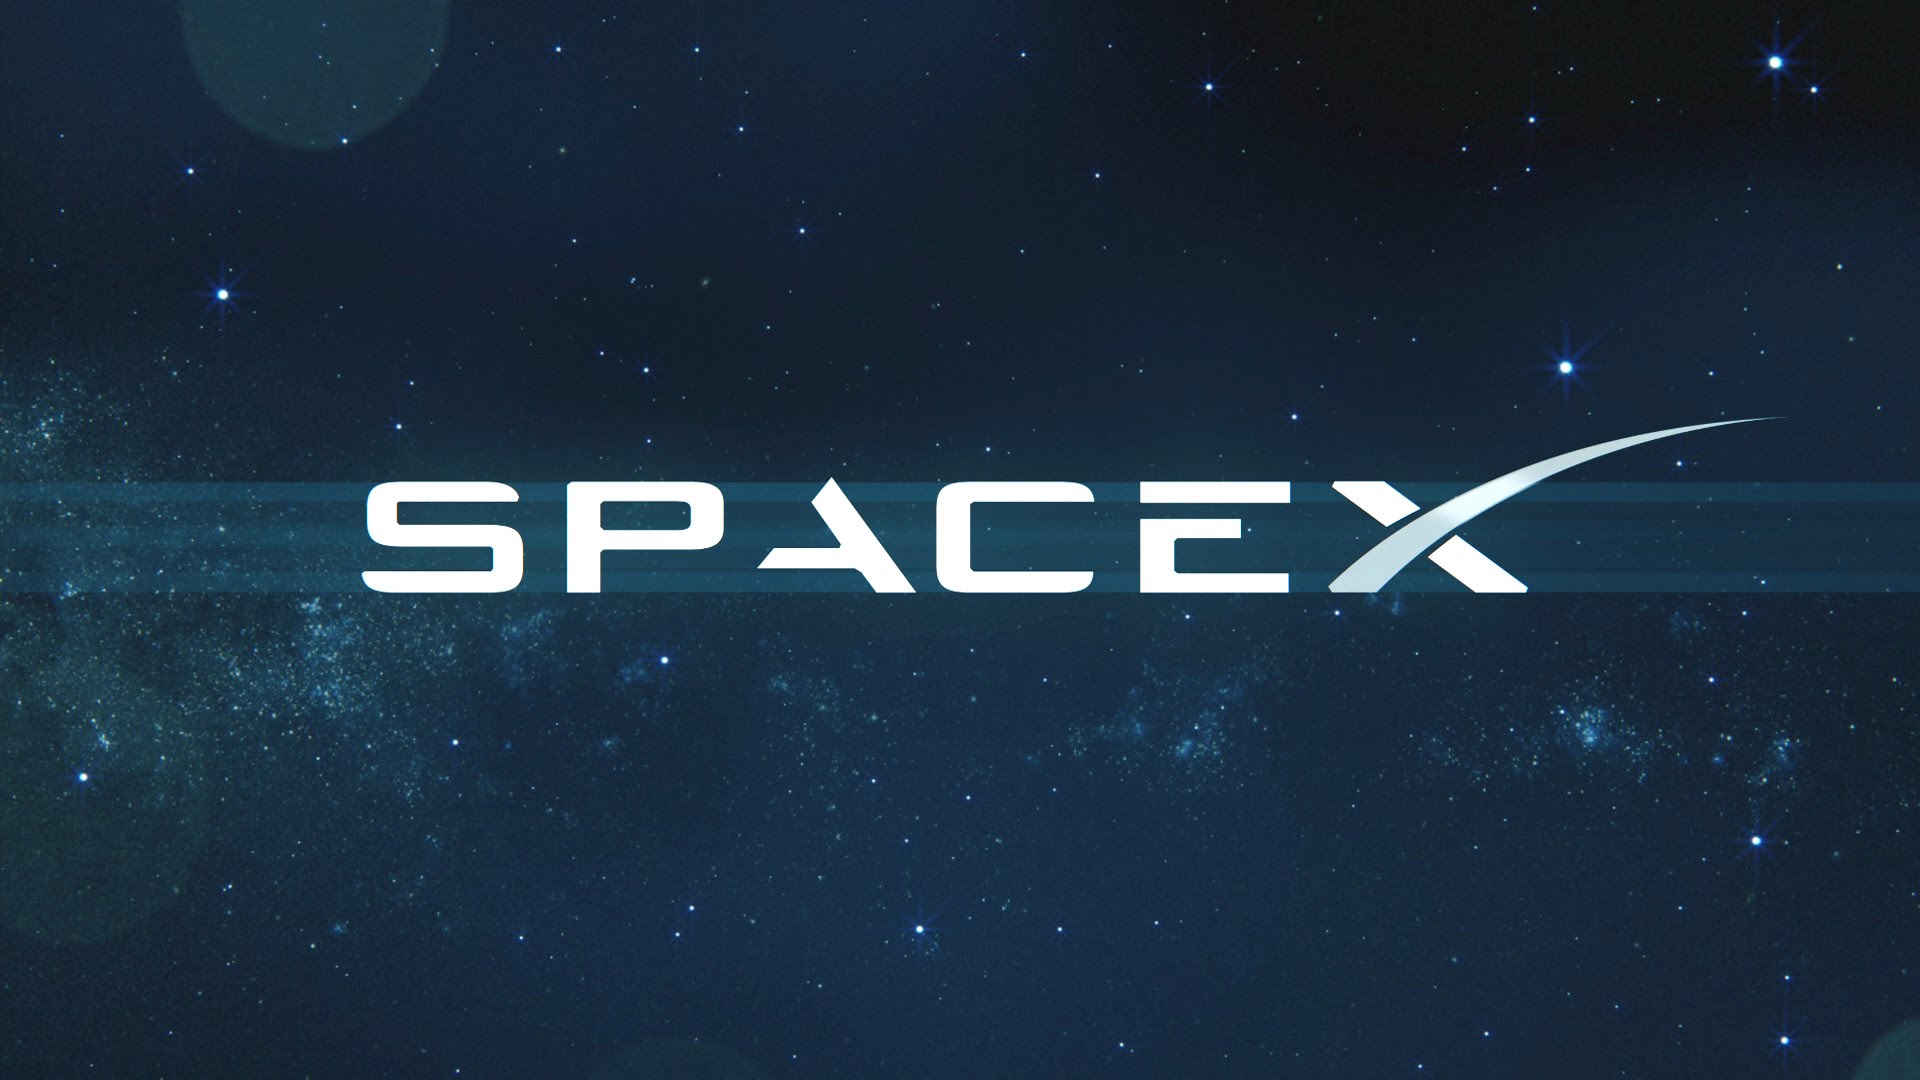 Δείτε τη νέα στολή της SpaceX και του Ε.Μασκ για… περίπατους στη Σελήνη (φωτό)